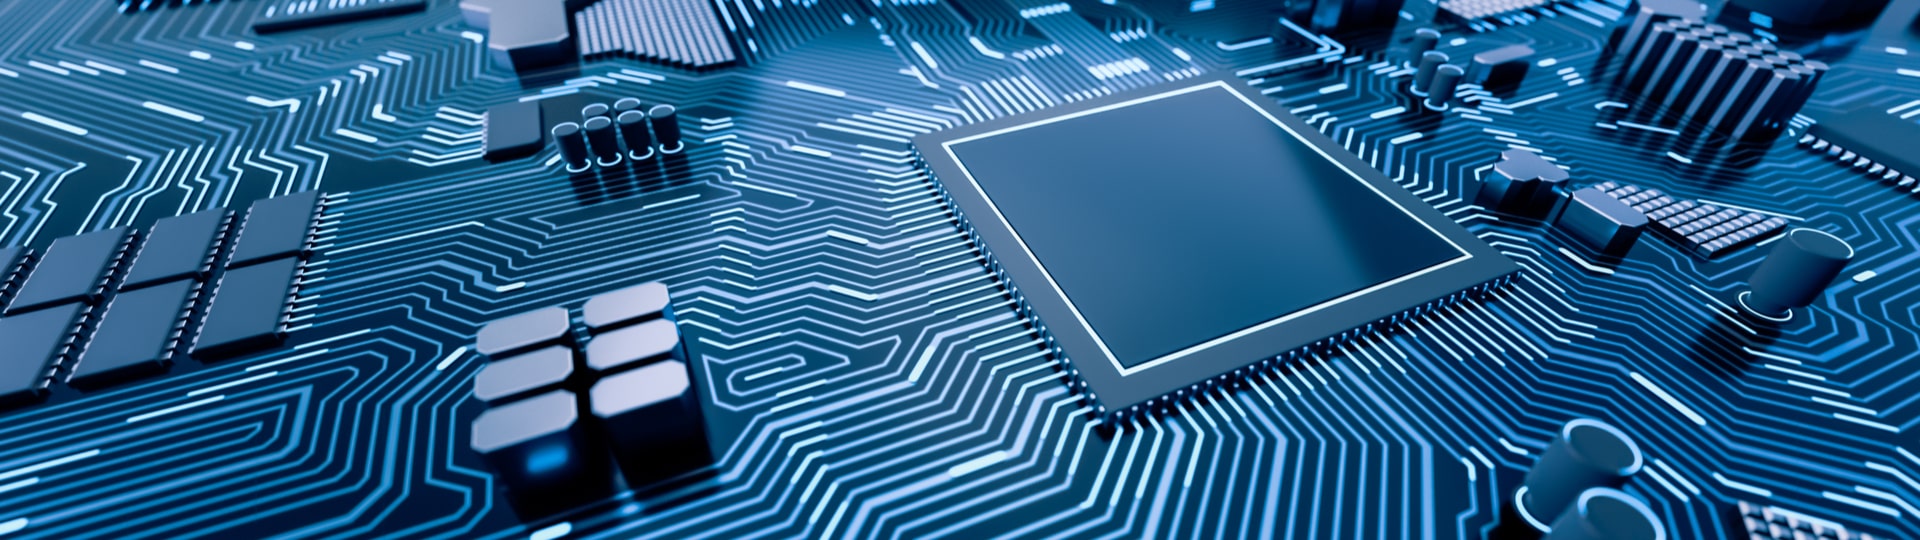 Výrobce čipů TSMC zvýšil zisk o 45 procent